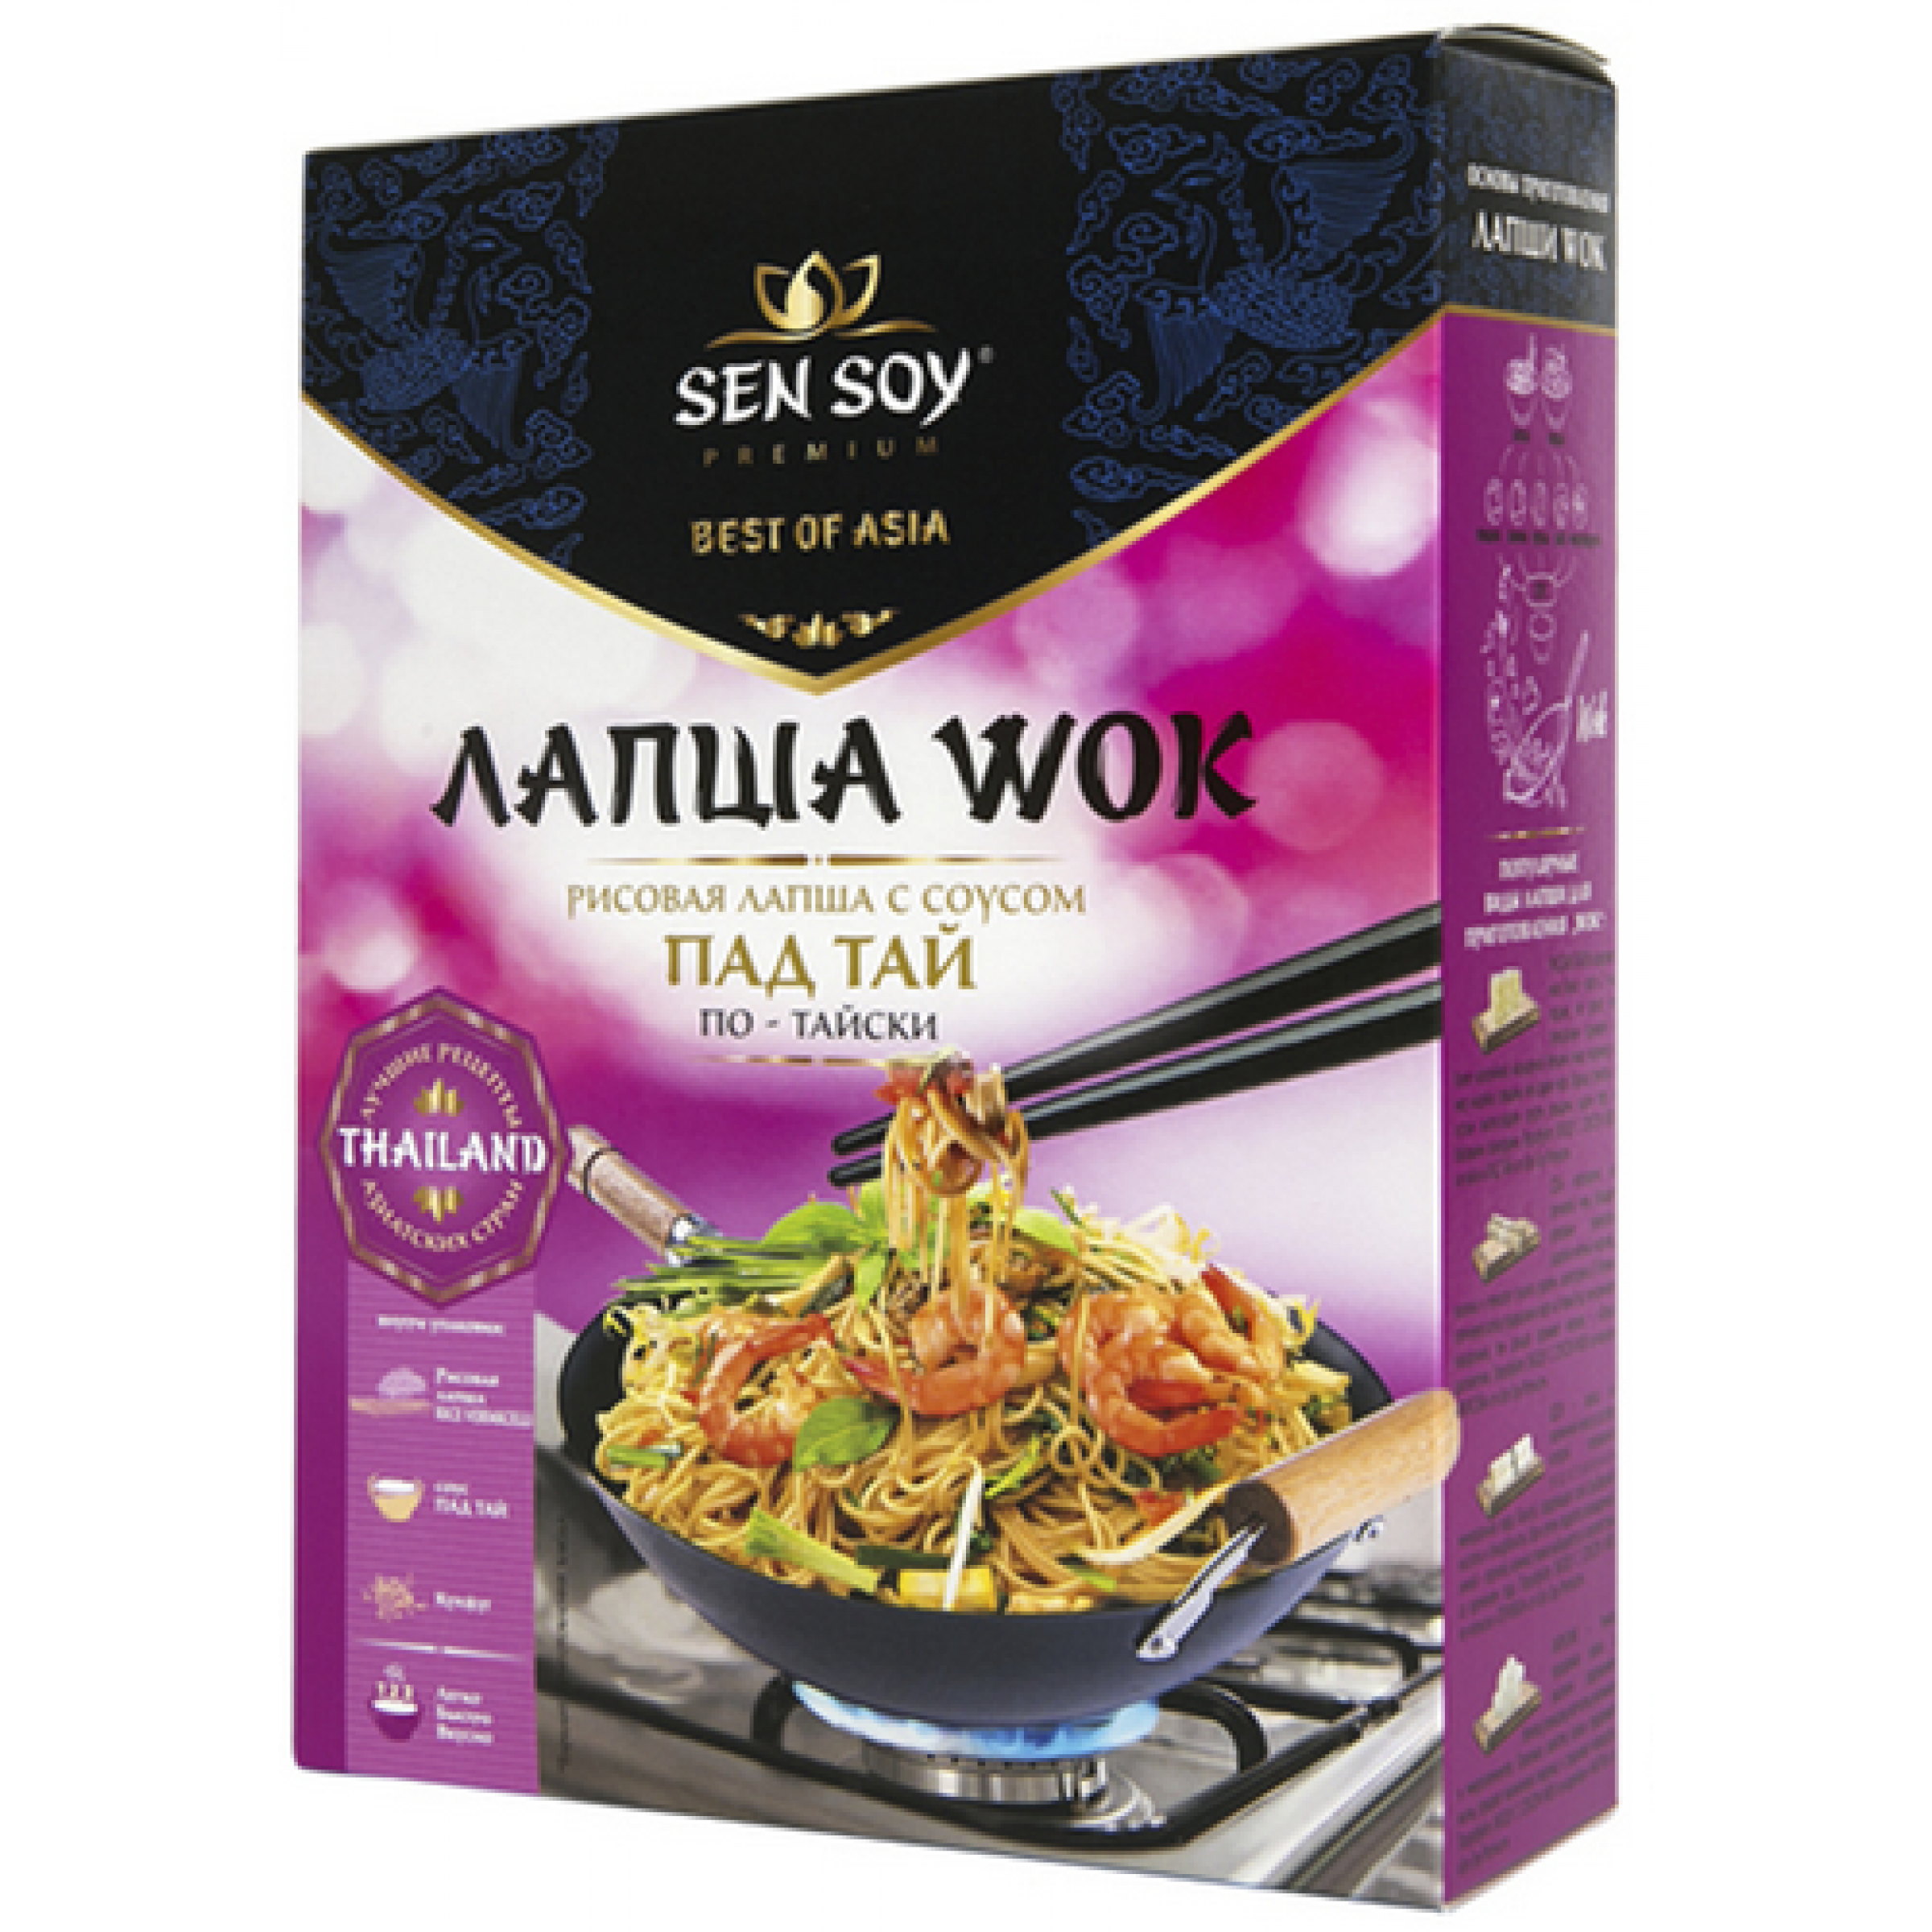 Набор для WOK по-тайски ПАД ТАЙ: Лапша рисовая с соусом Pad Thai Сэн Сой Премиум, 235 гр